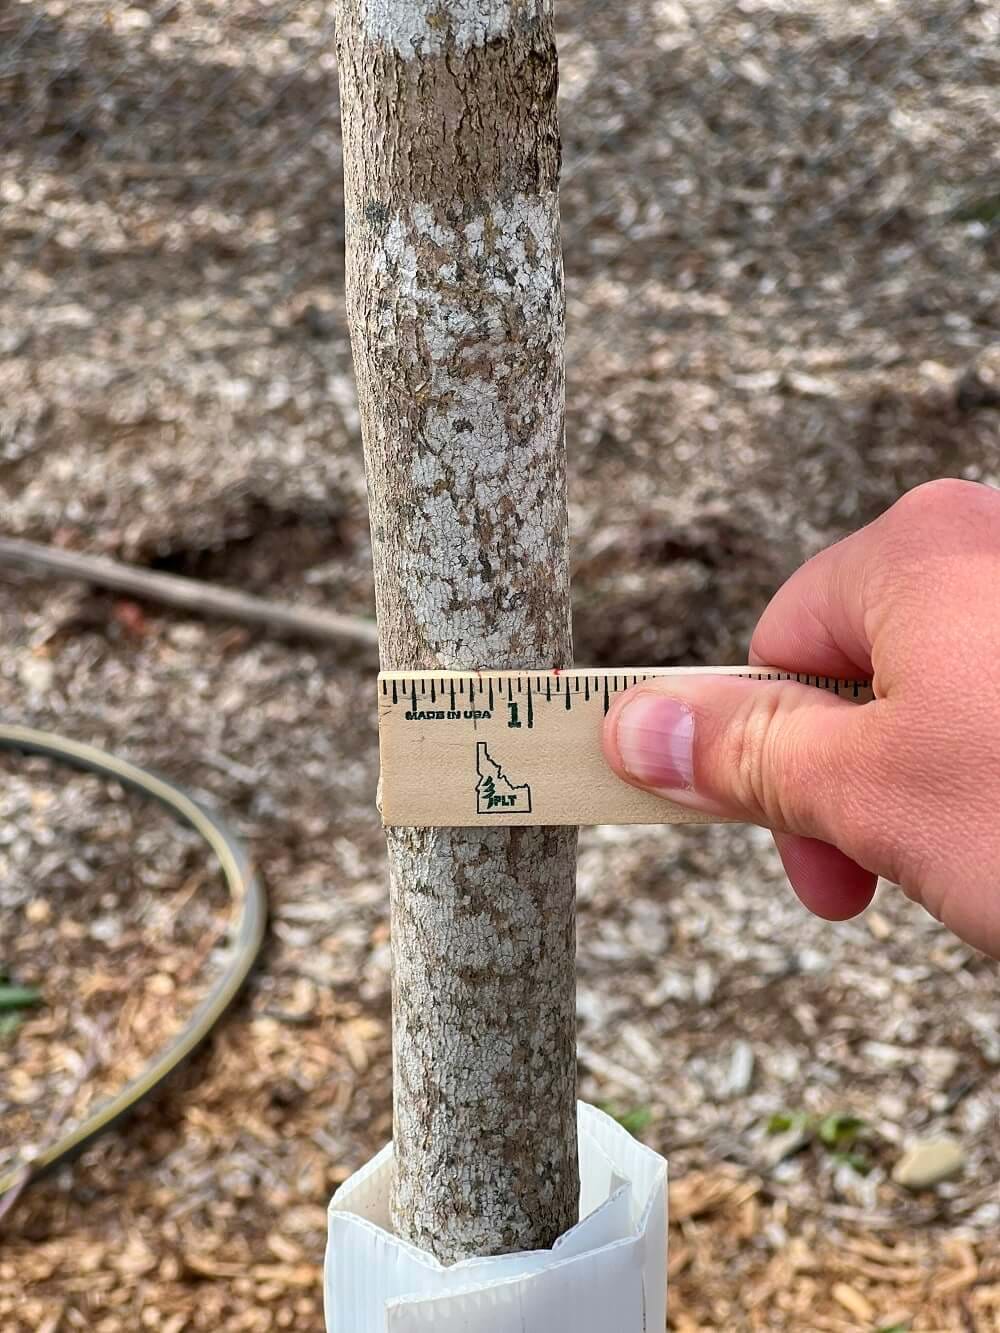 Measurement of tree diameter with ruler